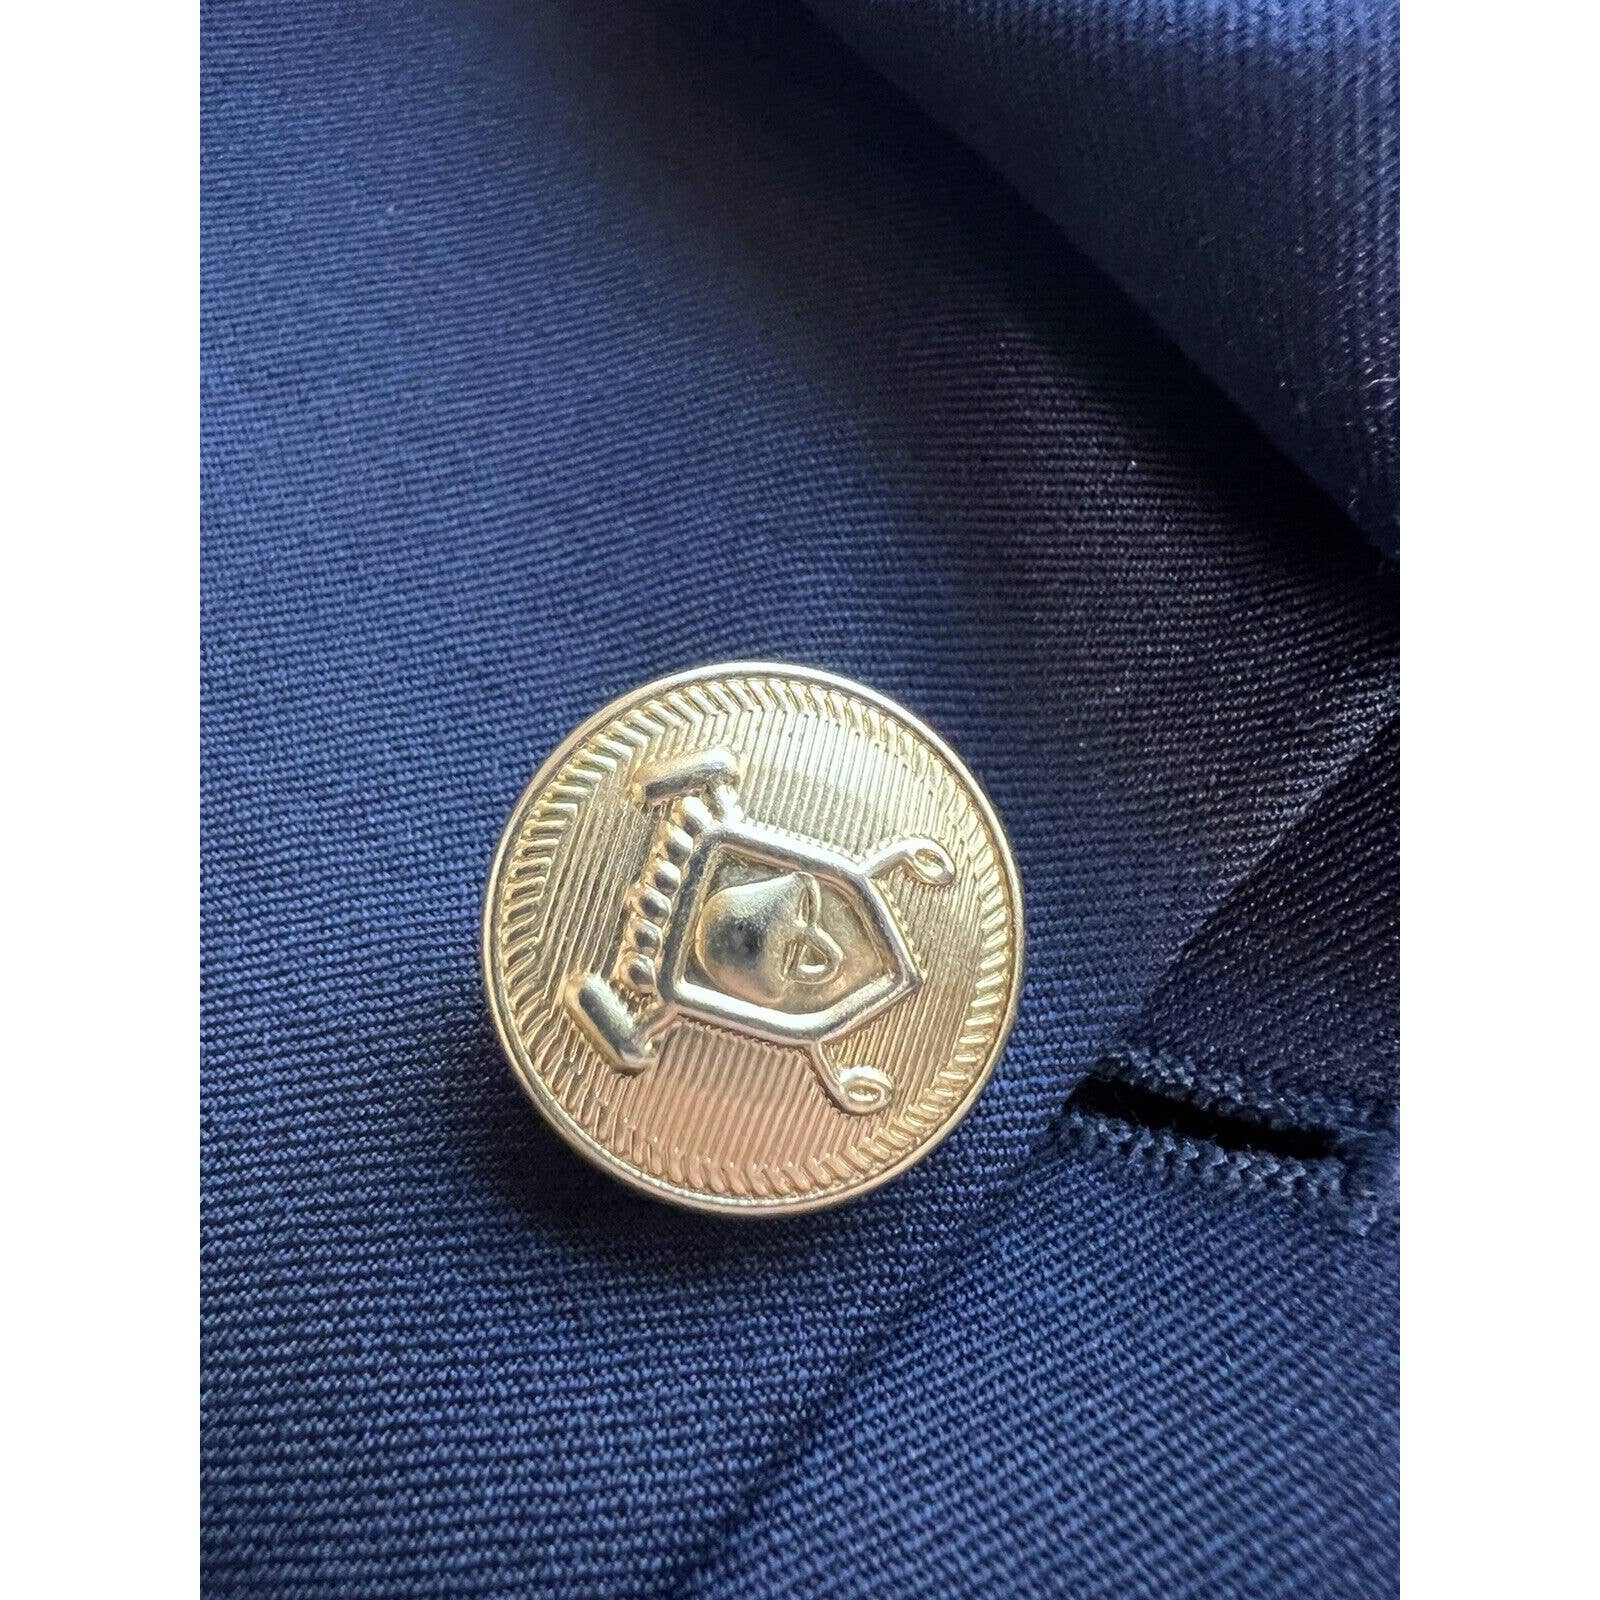 Ralph Lauren 2 Button Sport Coat Men’s 42L Navy Blue And Gold Buttons Wool